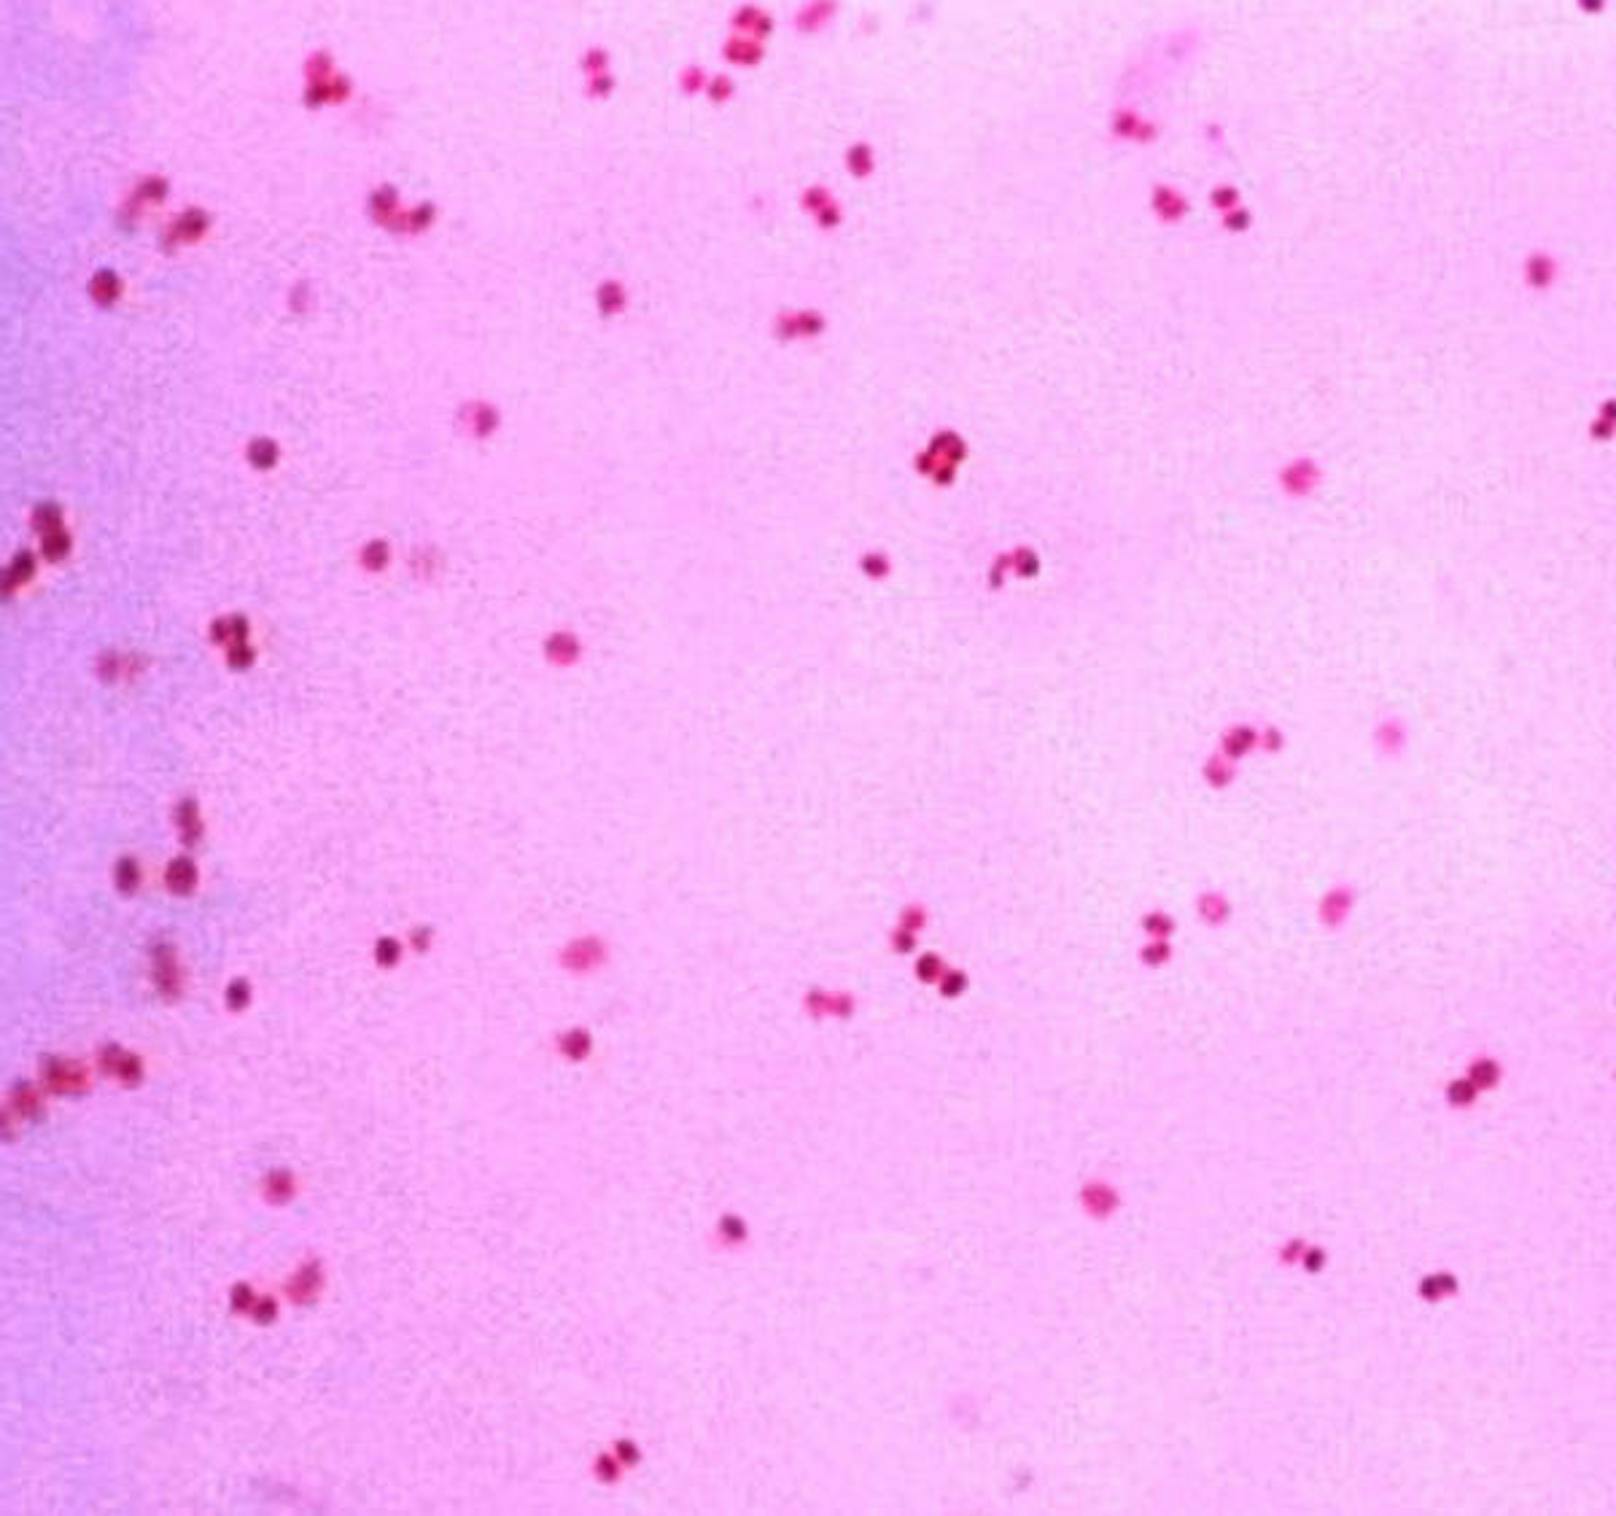 Neisseria gonorrhoeae, Priorität 2: Gonokokken sind Auslöser von Tripper.